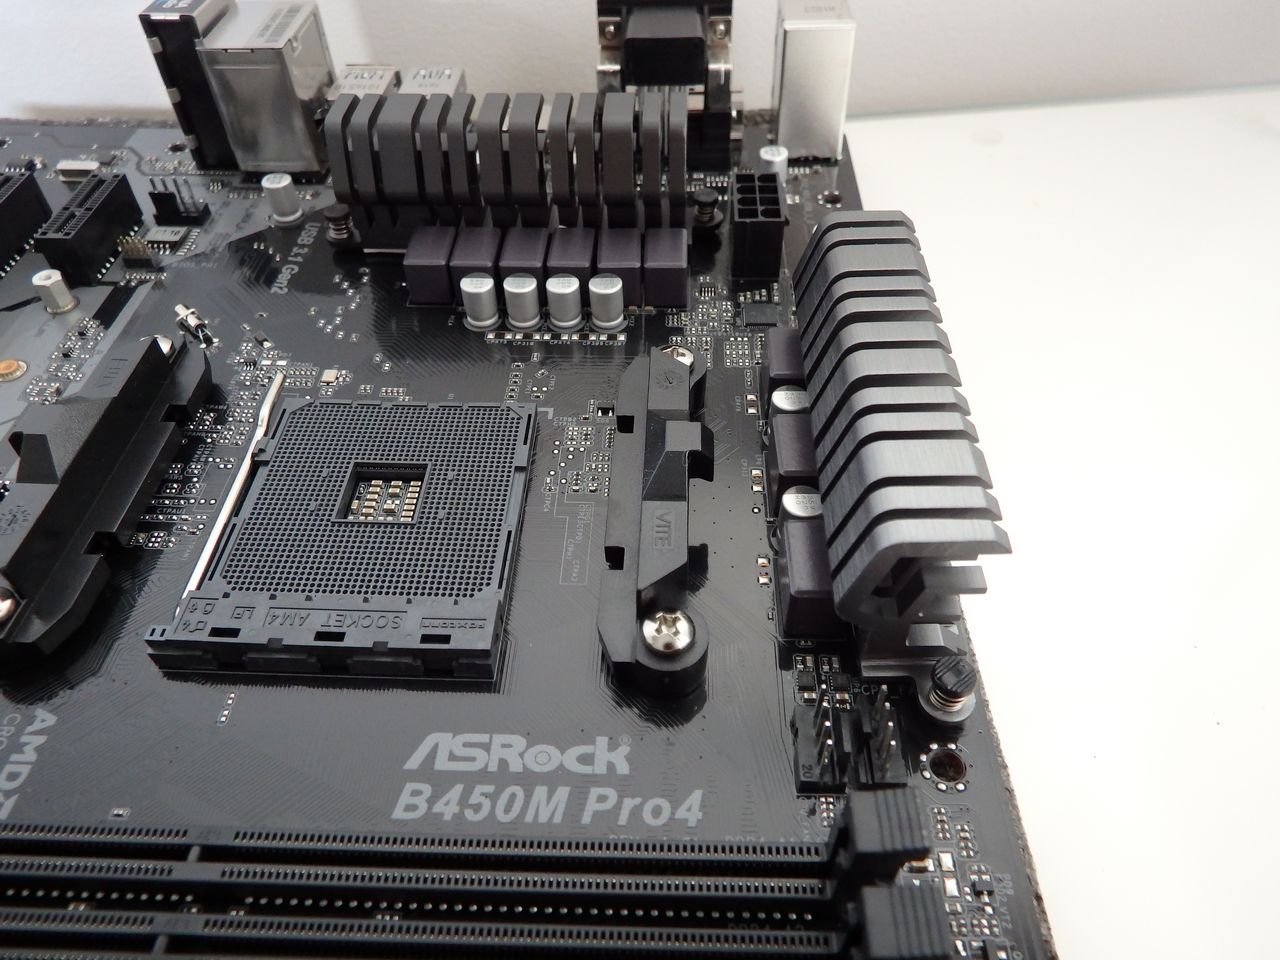 oprindelse væbner Jakke Reviewed: ASRock B450M Pro4 Motherboard - PC Tech Reviews Australia